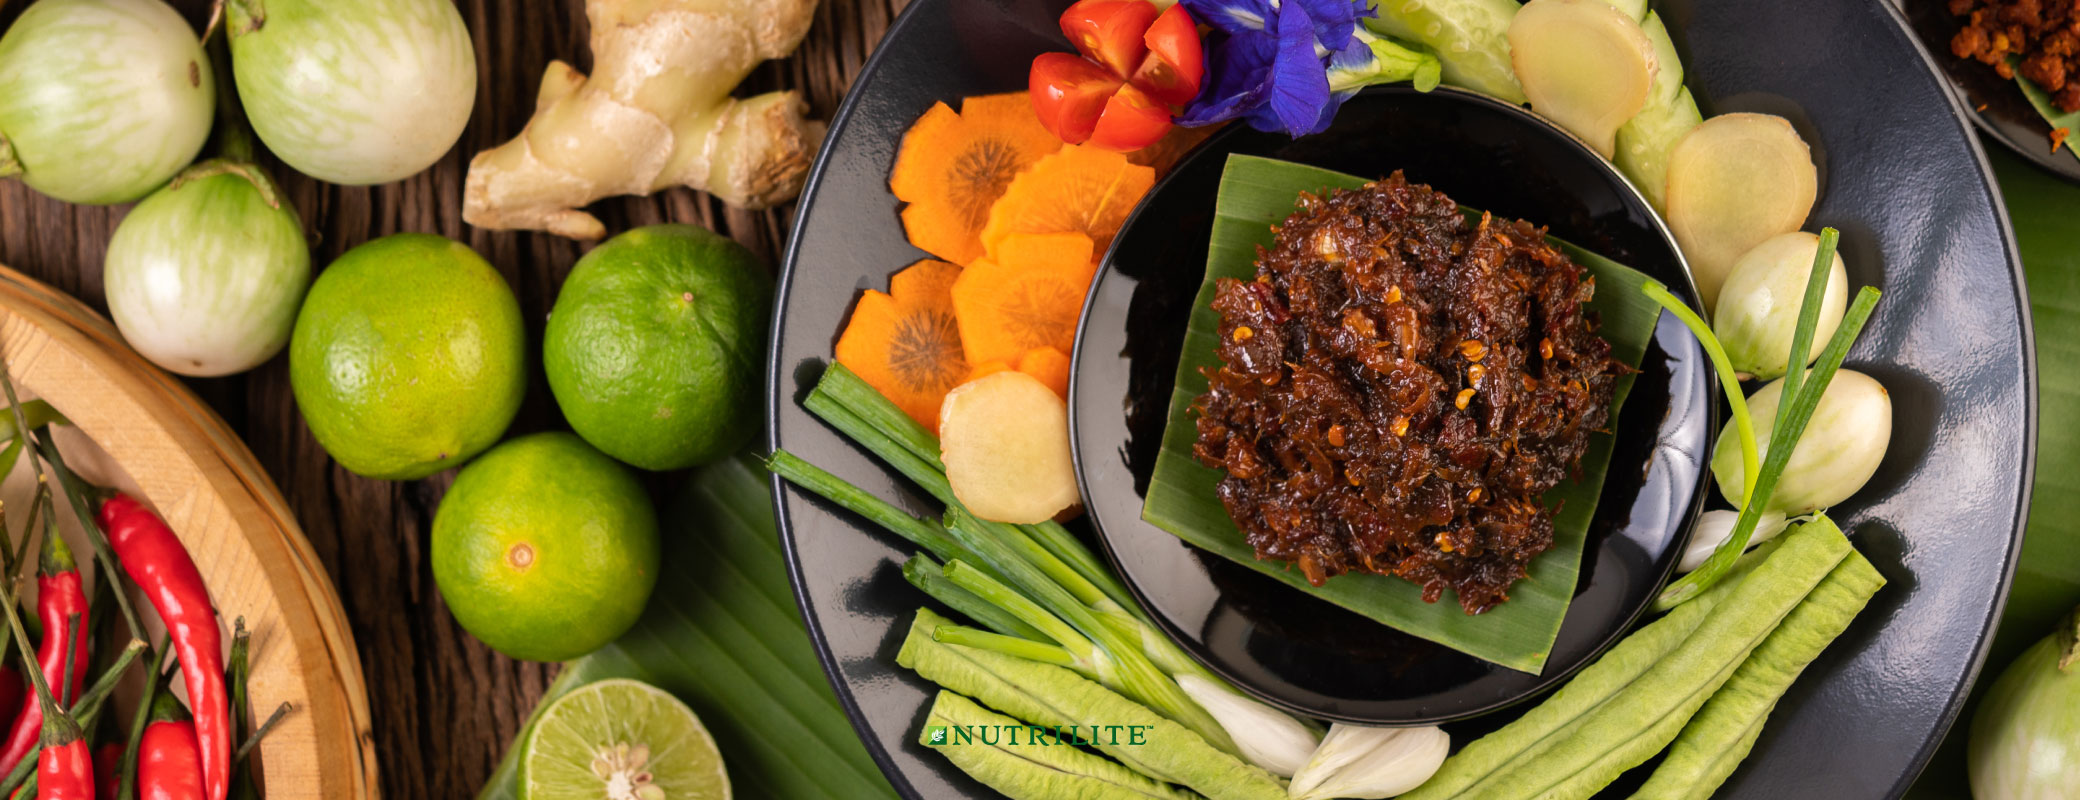 อาหารลดความอ้วน พร้อมทริคเด็ด! กินยังไงให้ผอม | Nutrilite™ Thailand